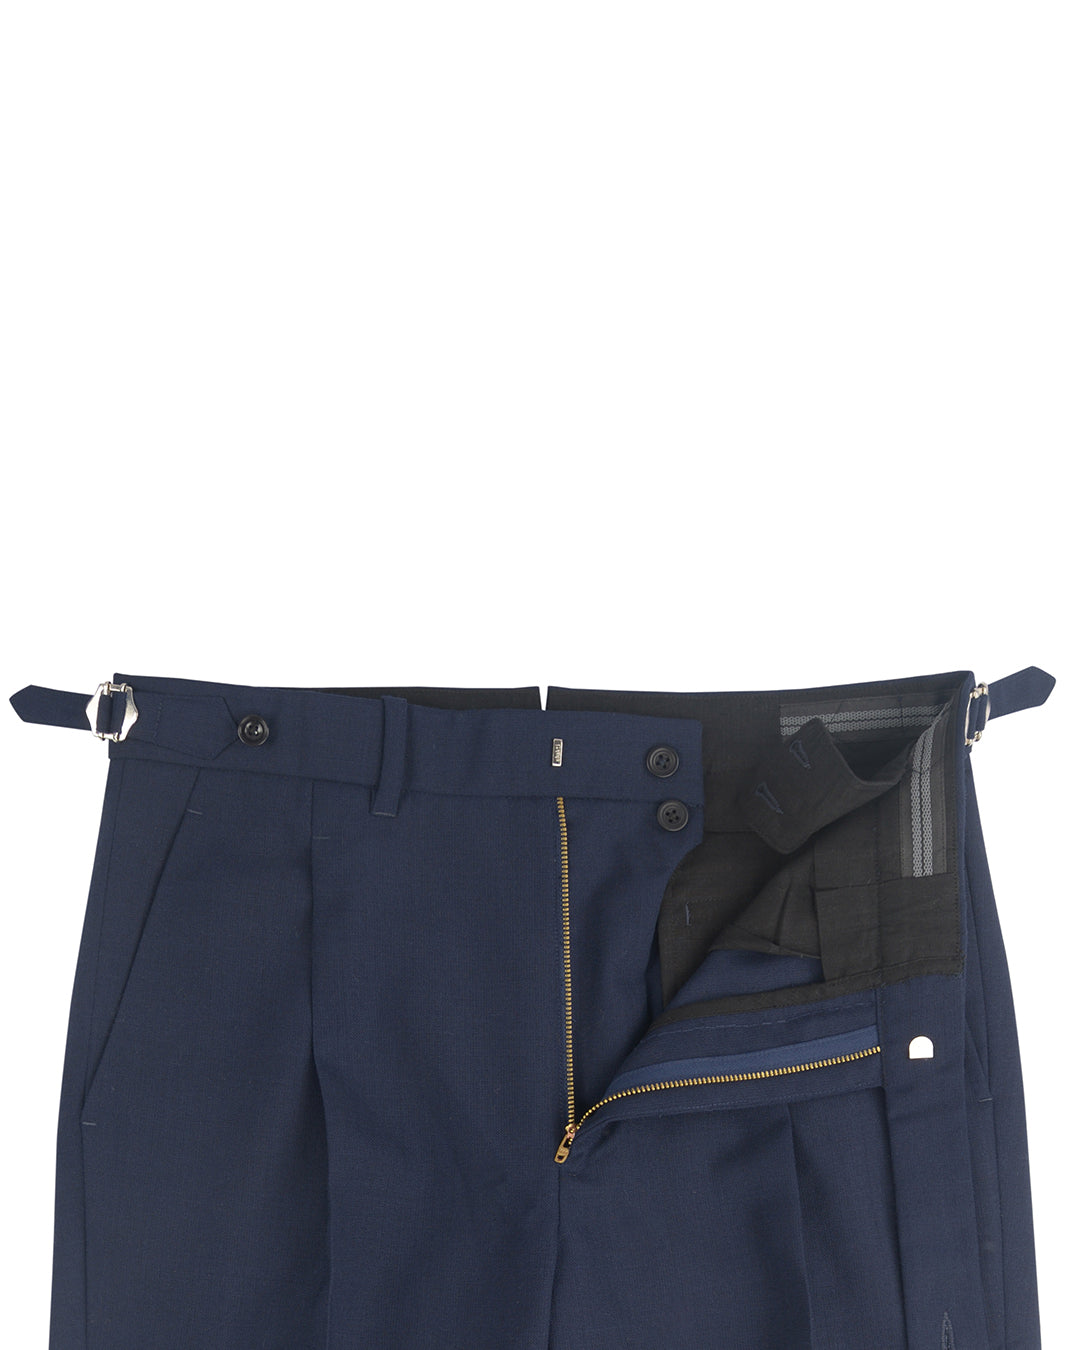 Minnis Fresco III Pants: Navy